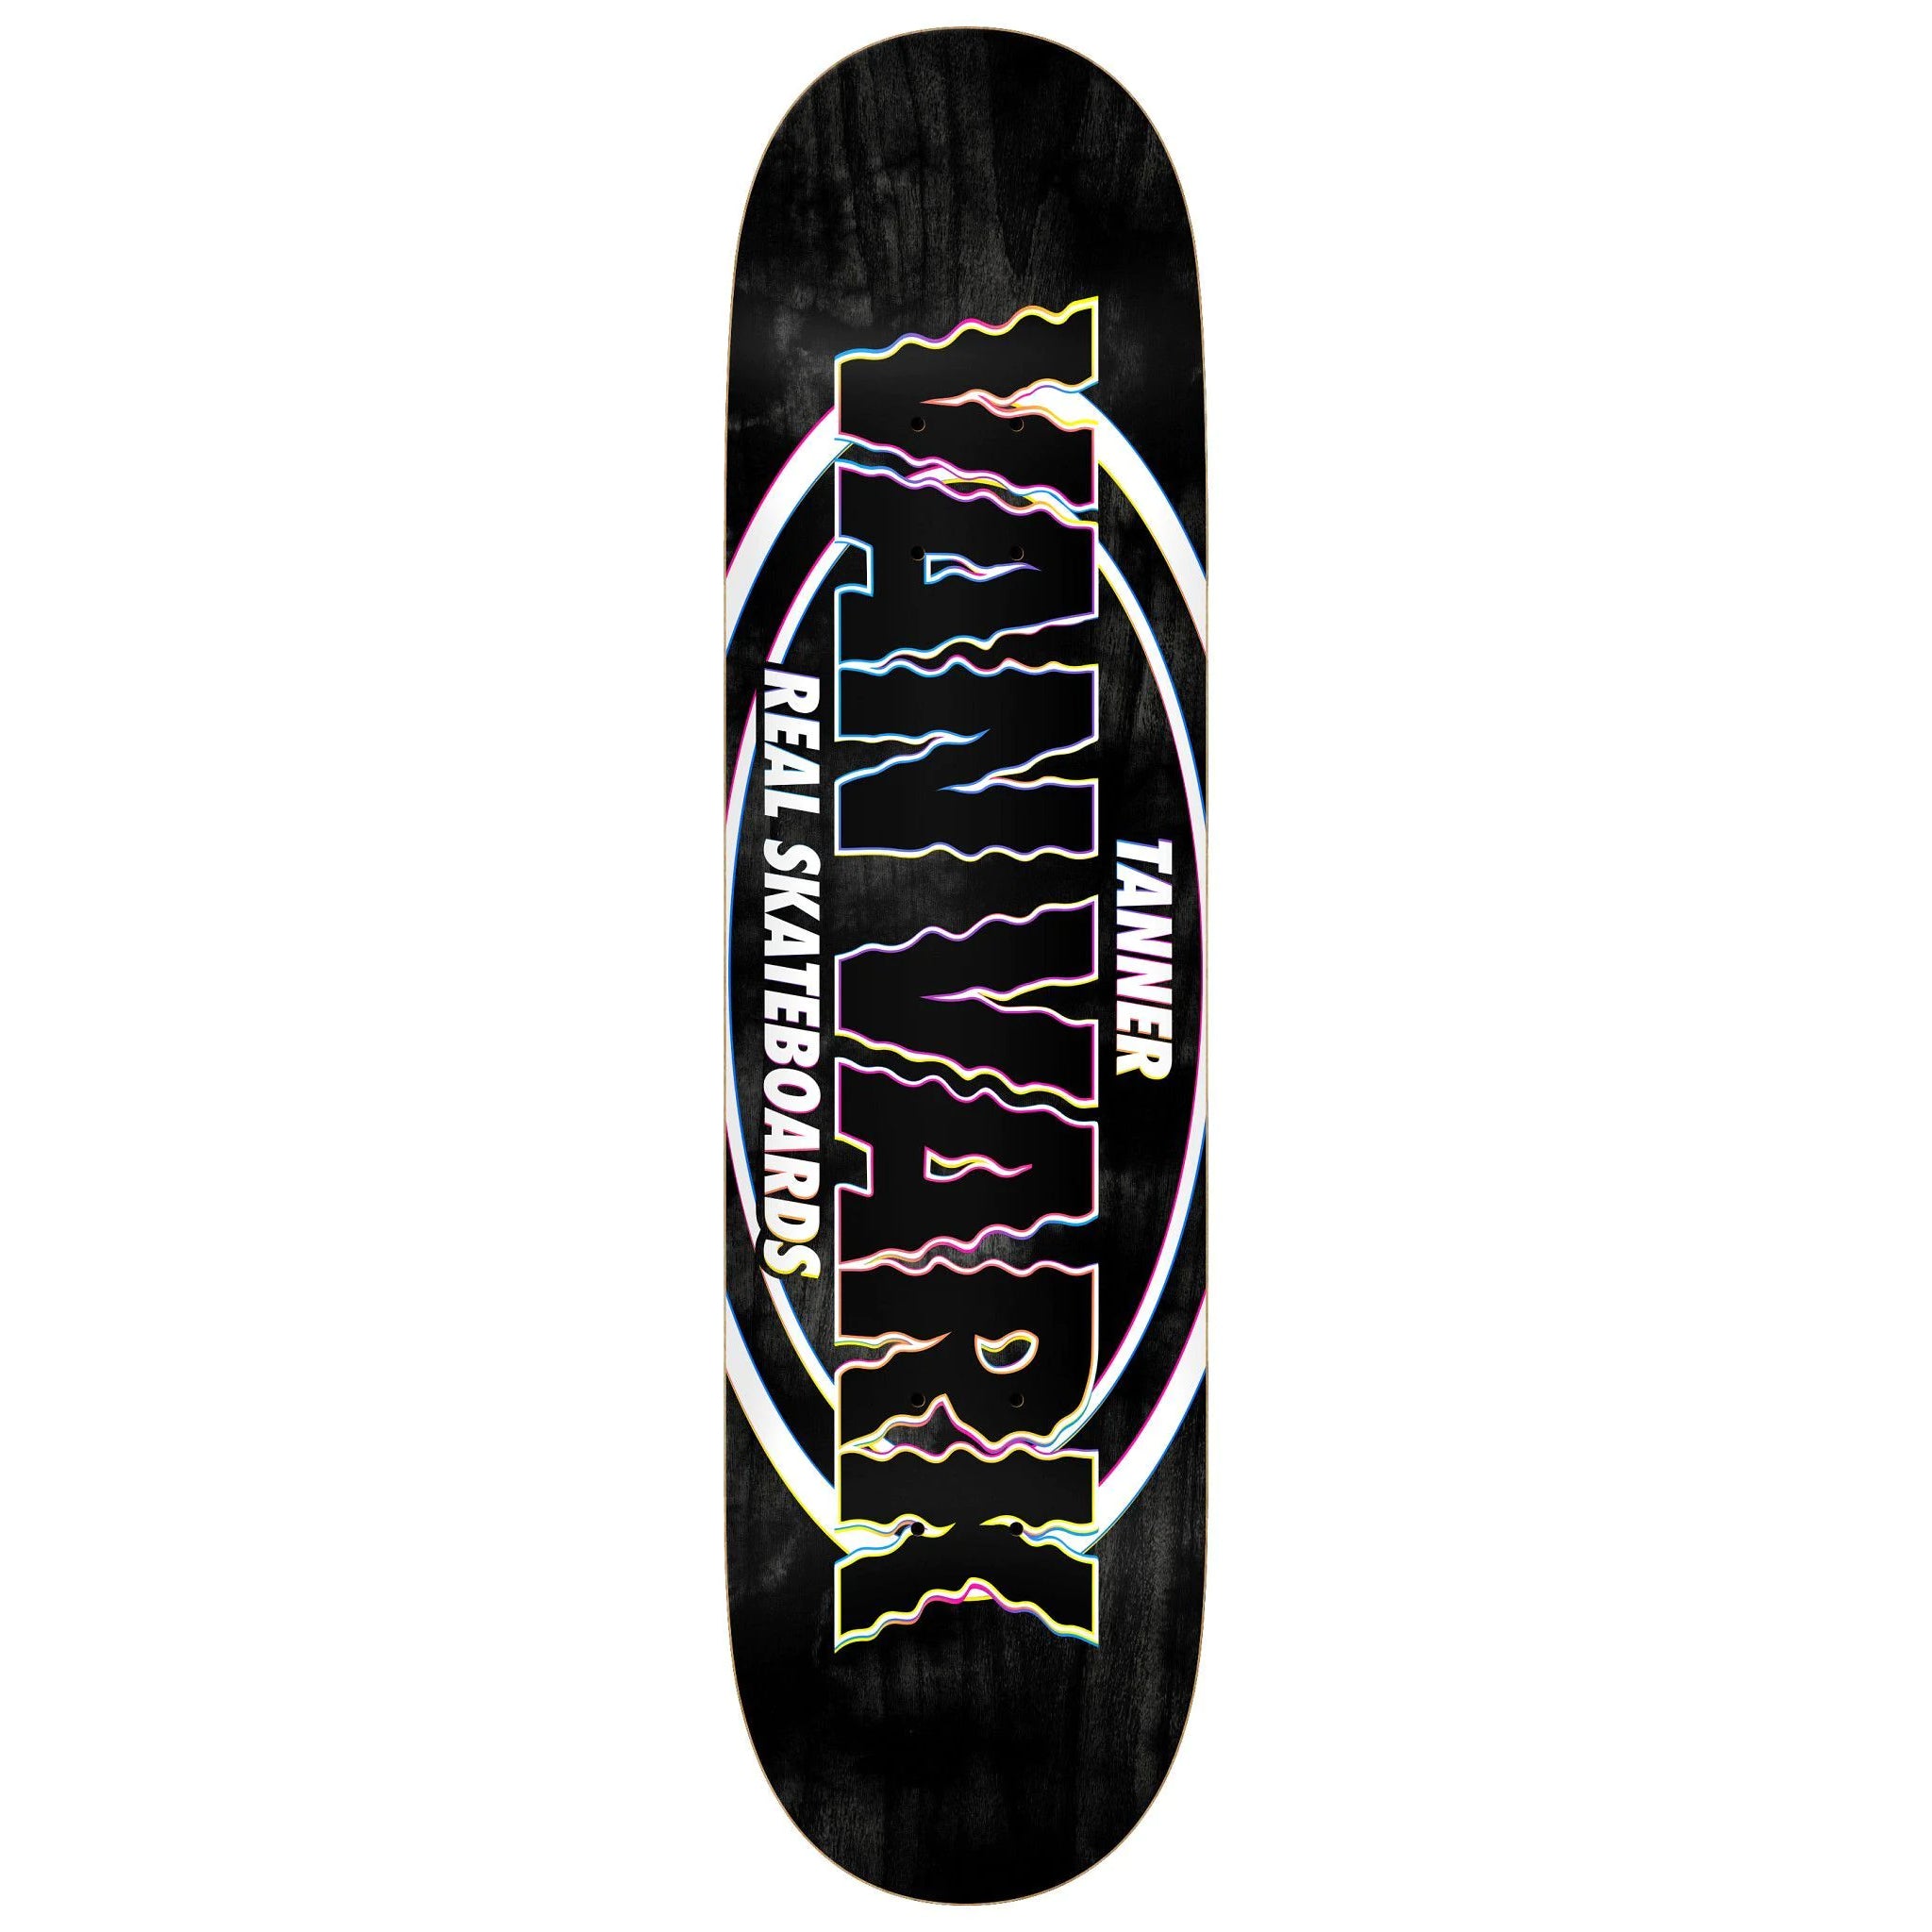 Tanner VanVark Pro Oval Real Skateboard Deck